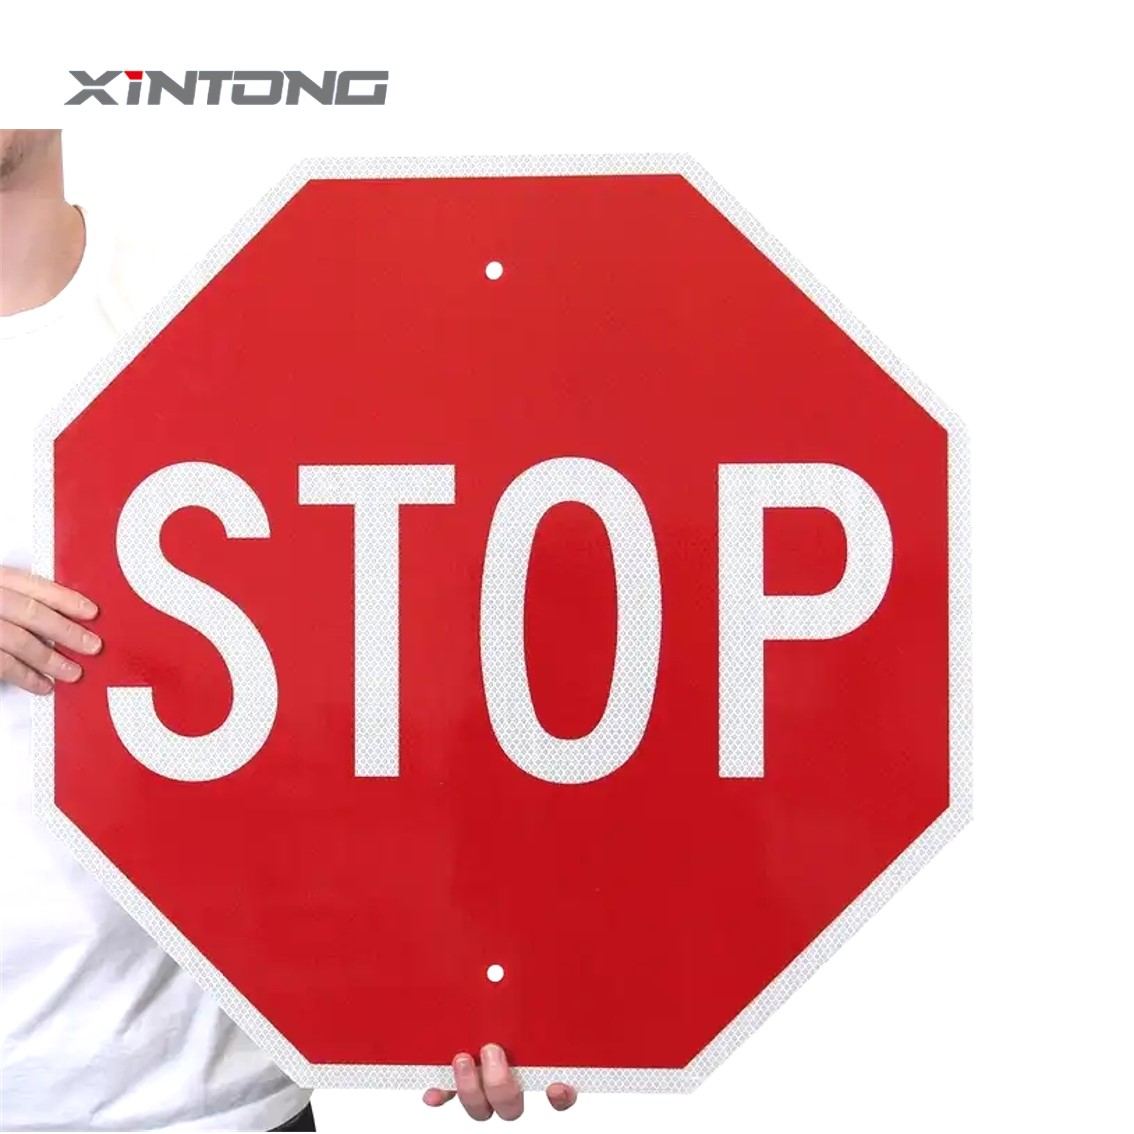 XINTONG Portable City Road Traffic Warning Sign